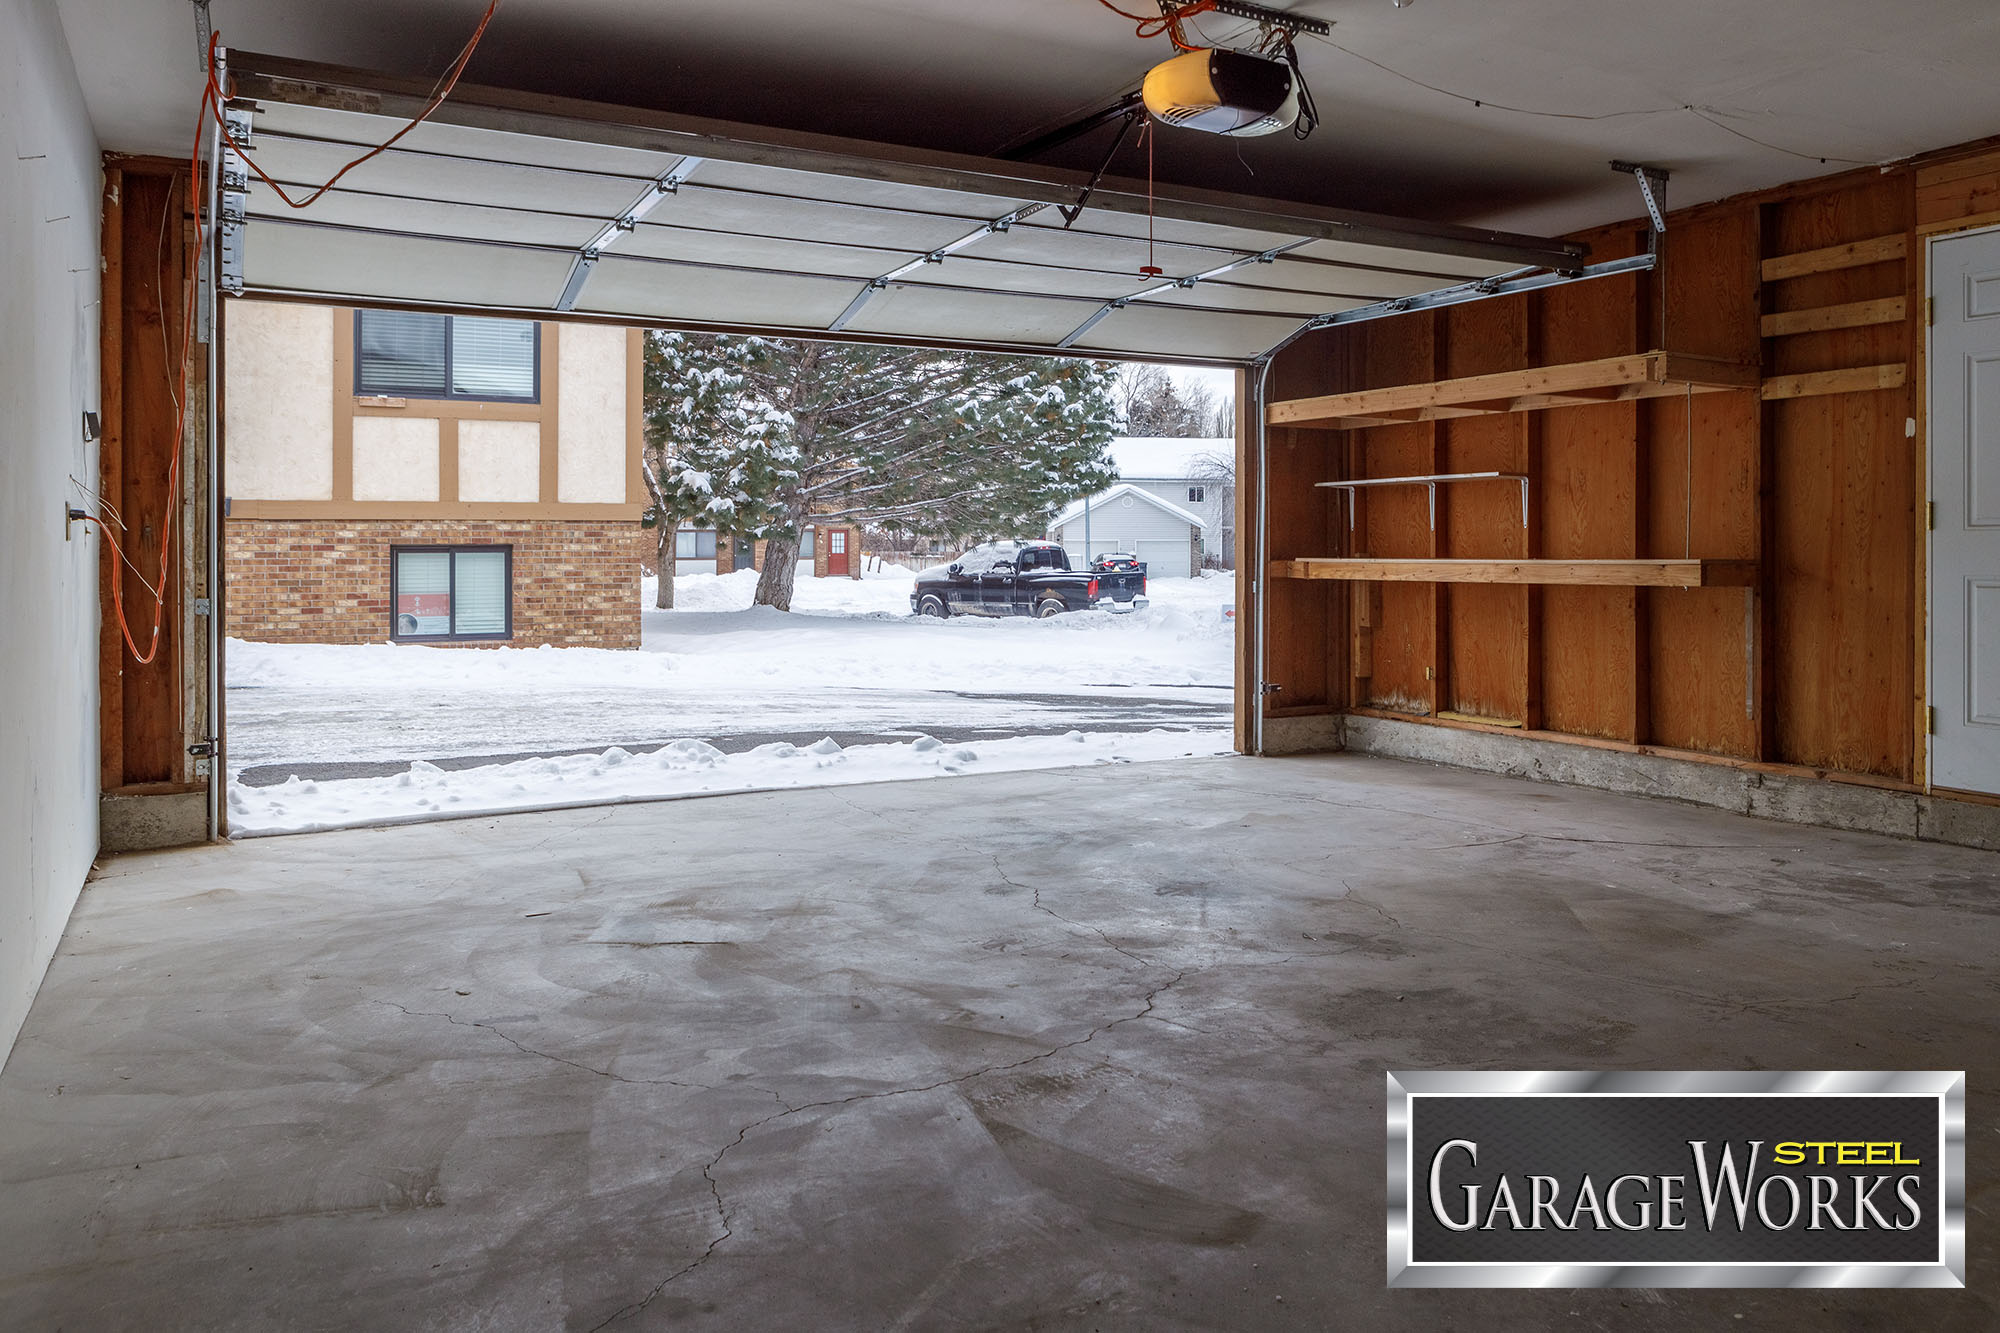 Clean garage in winter